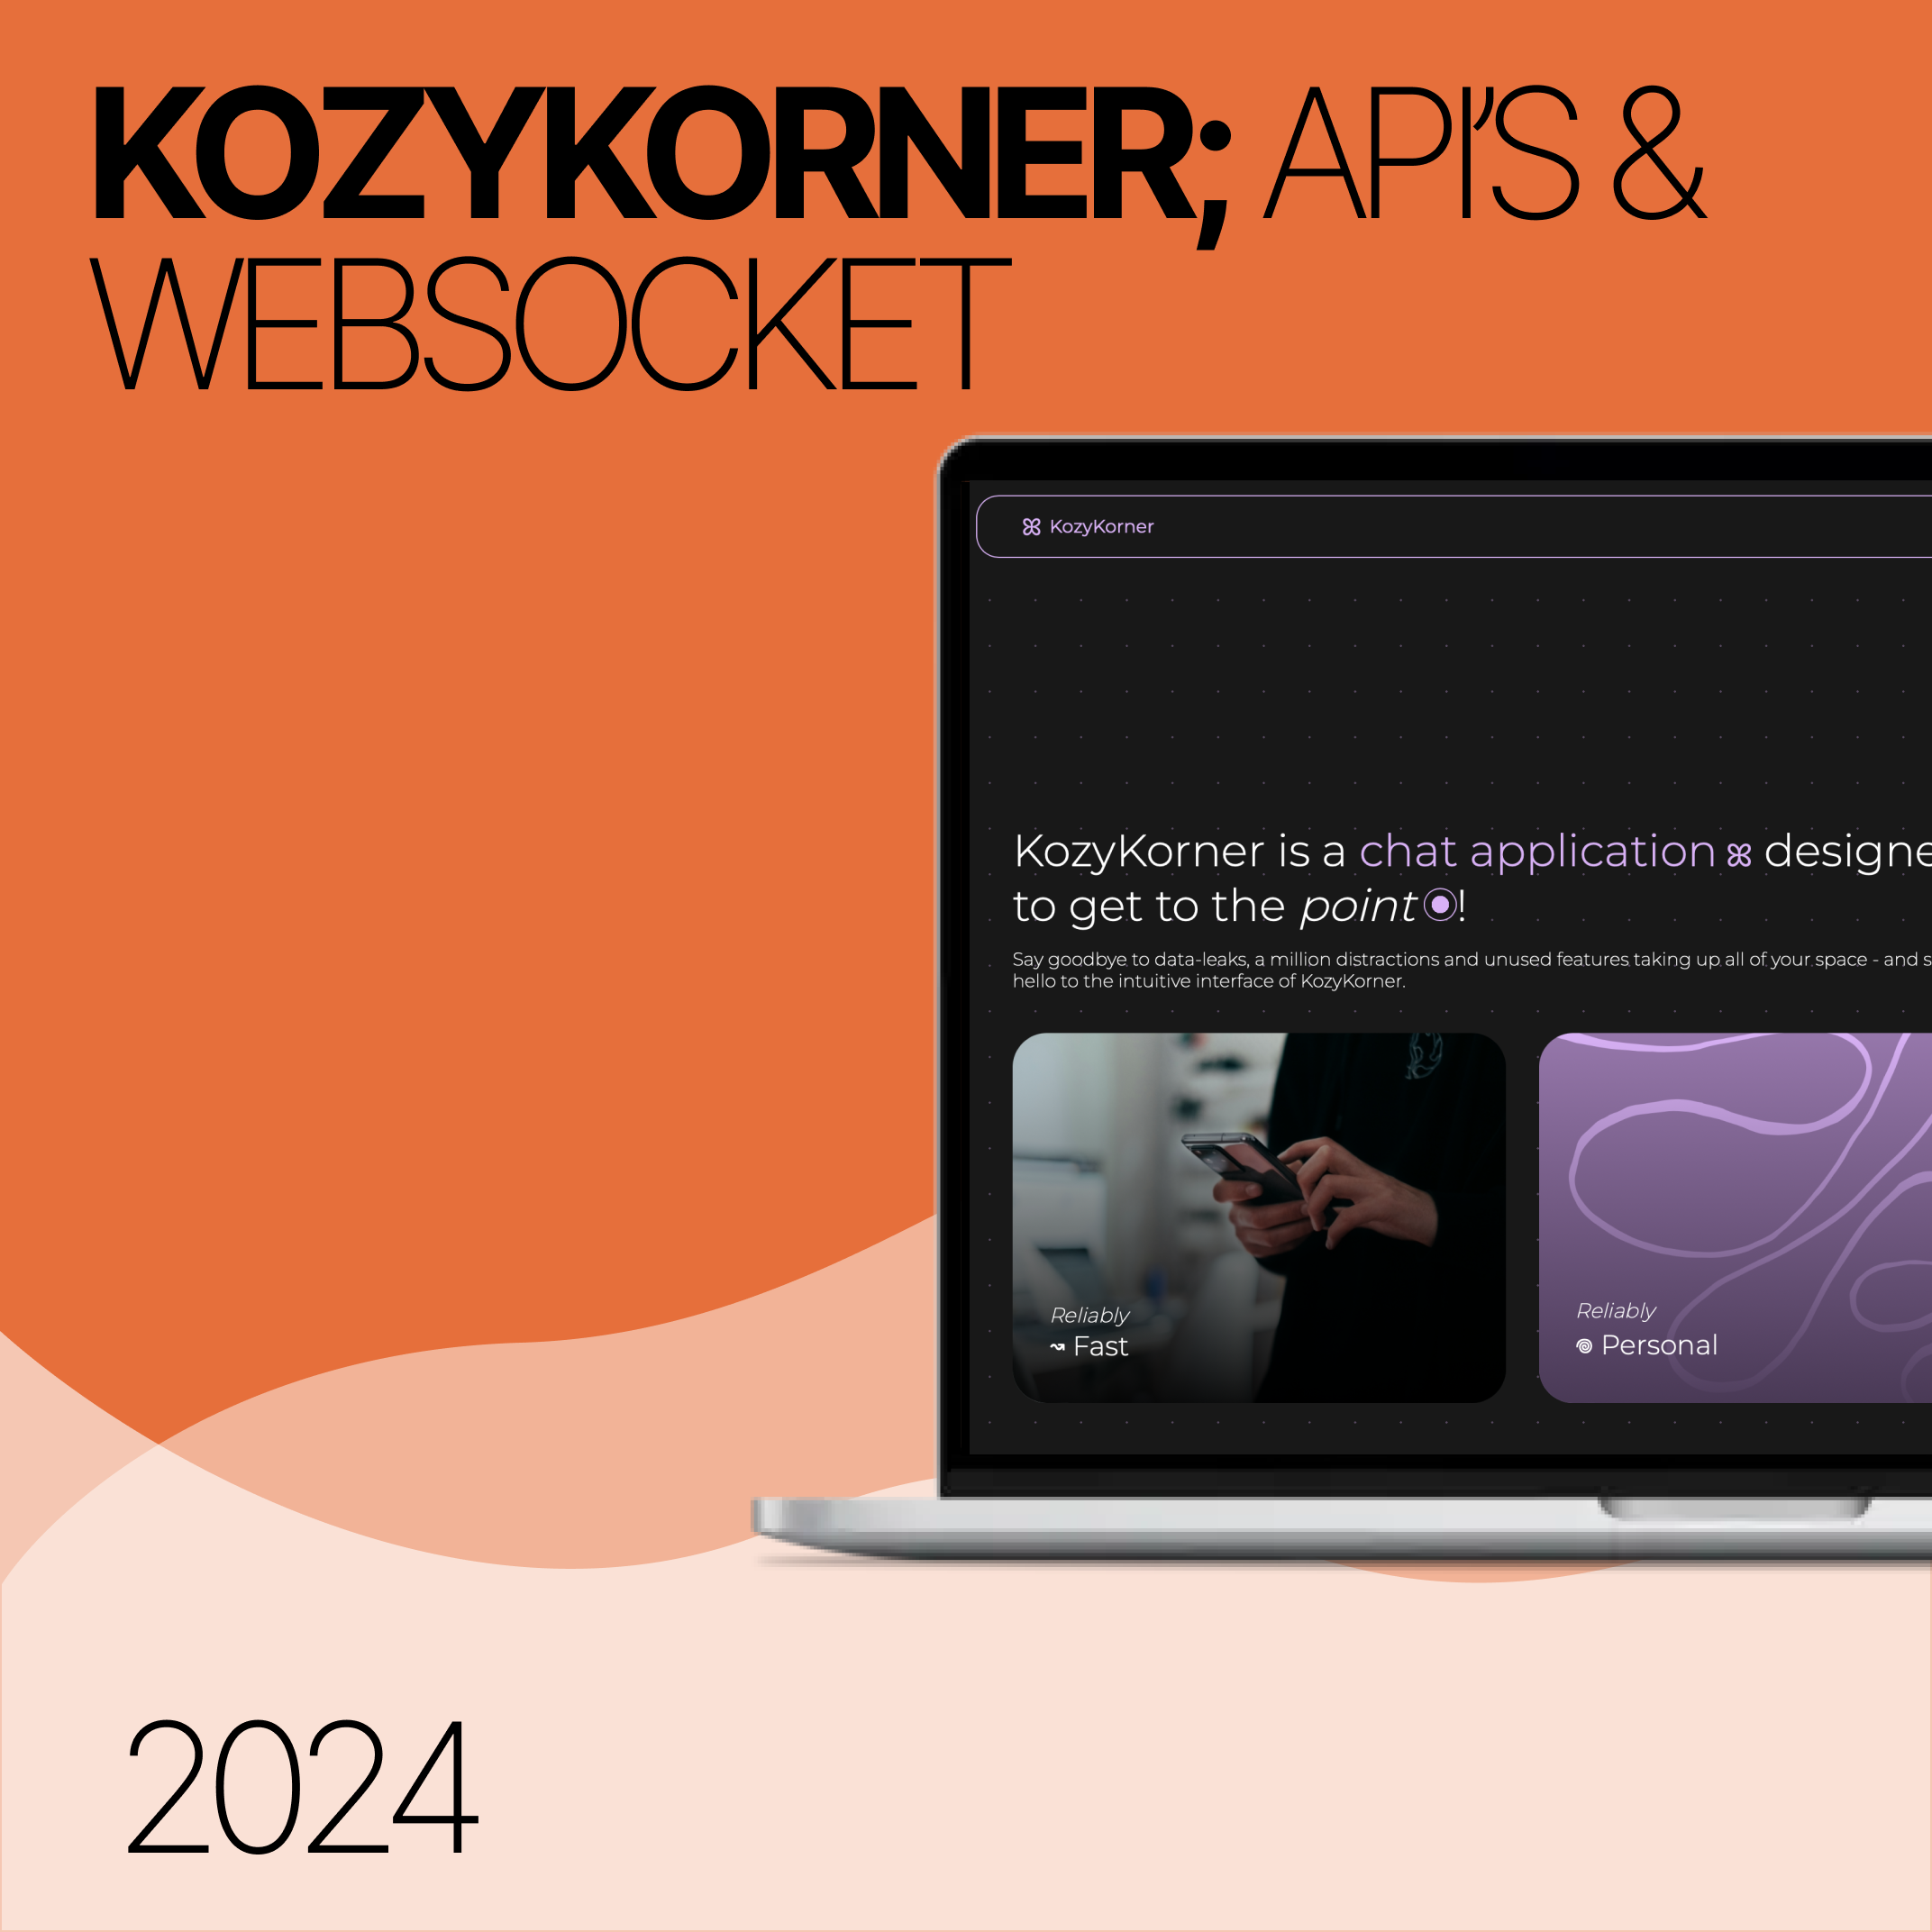 KozyKorner: API's and Websocket